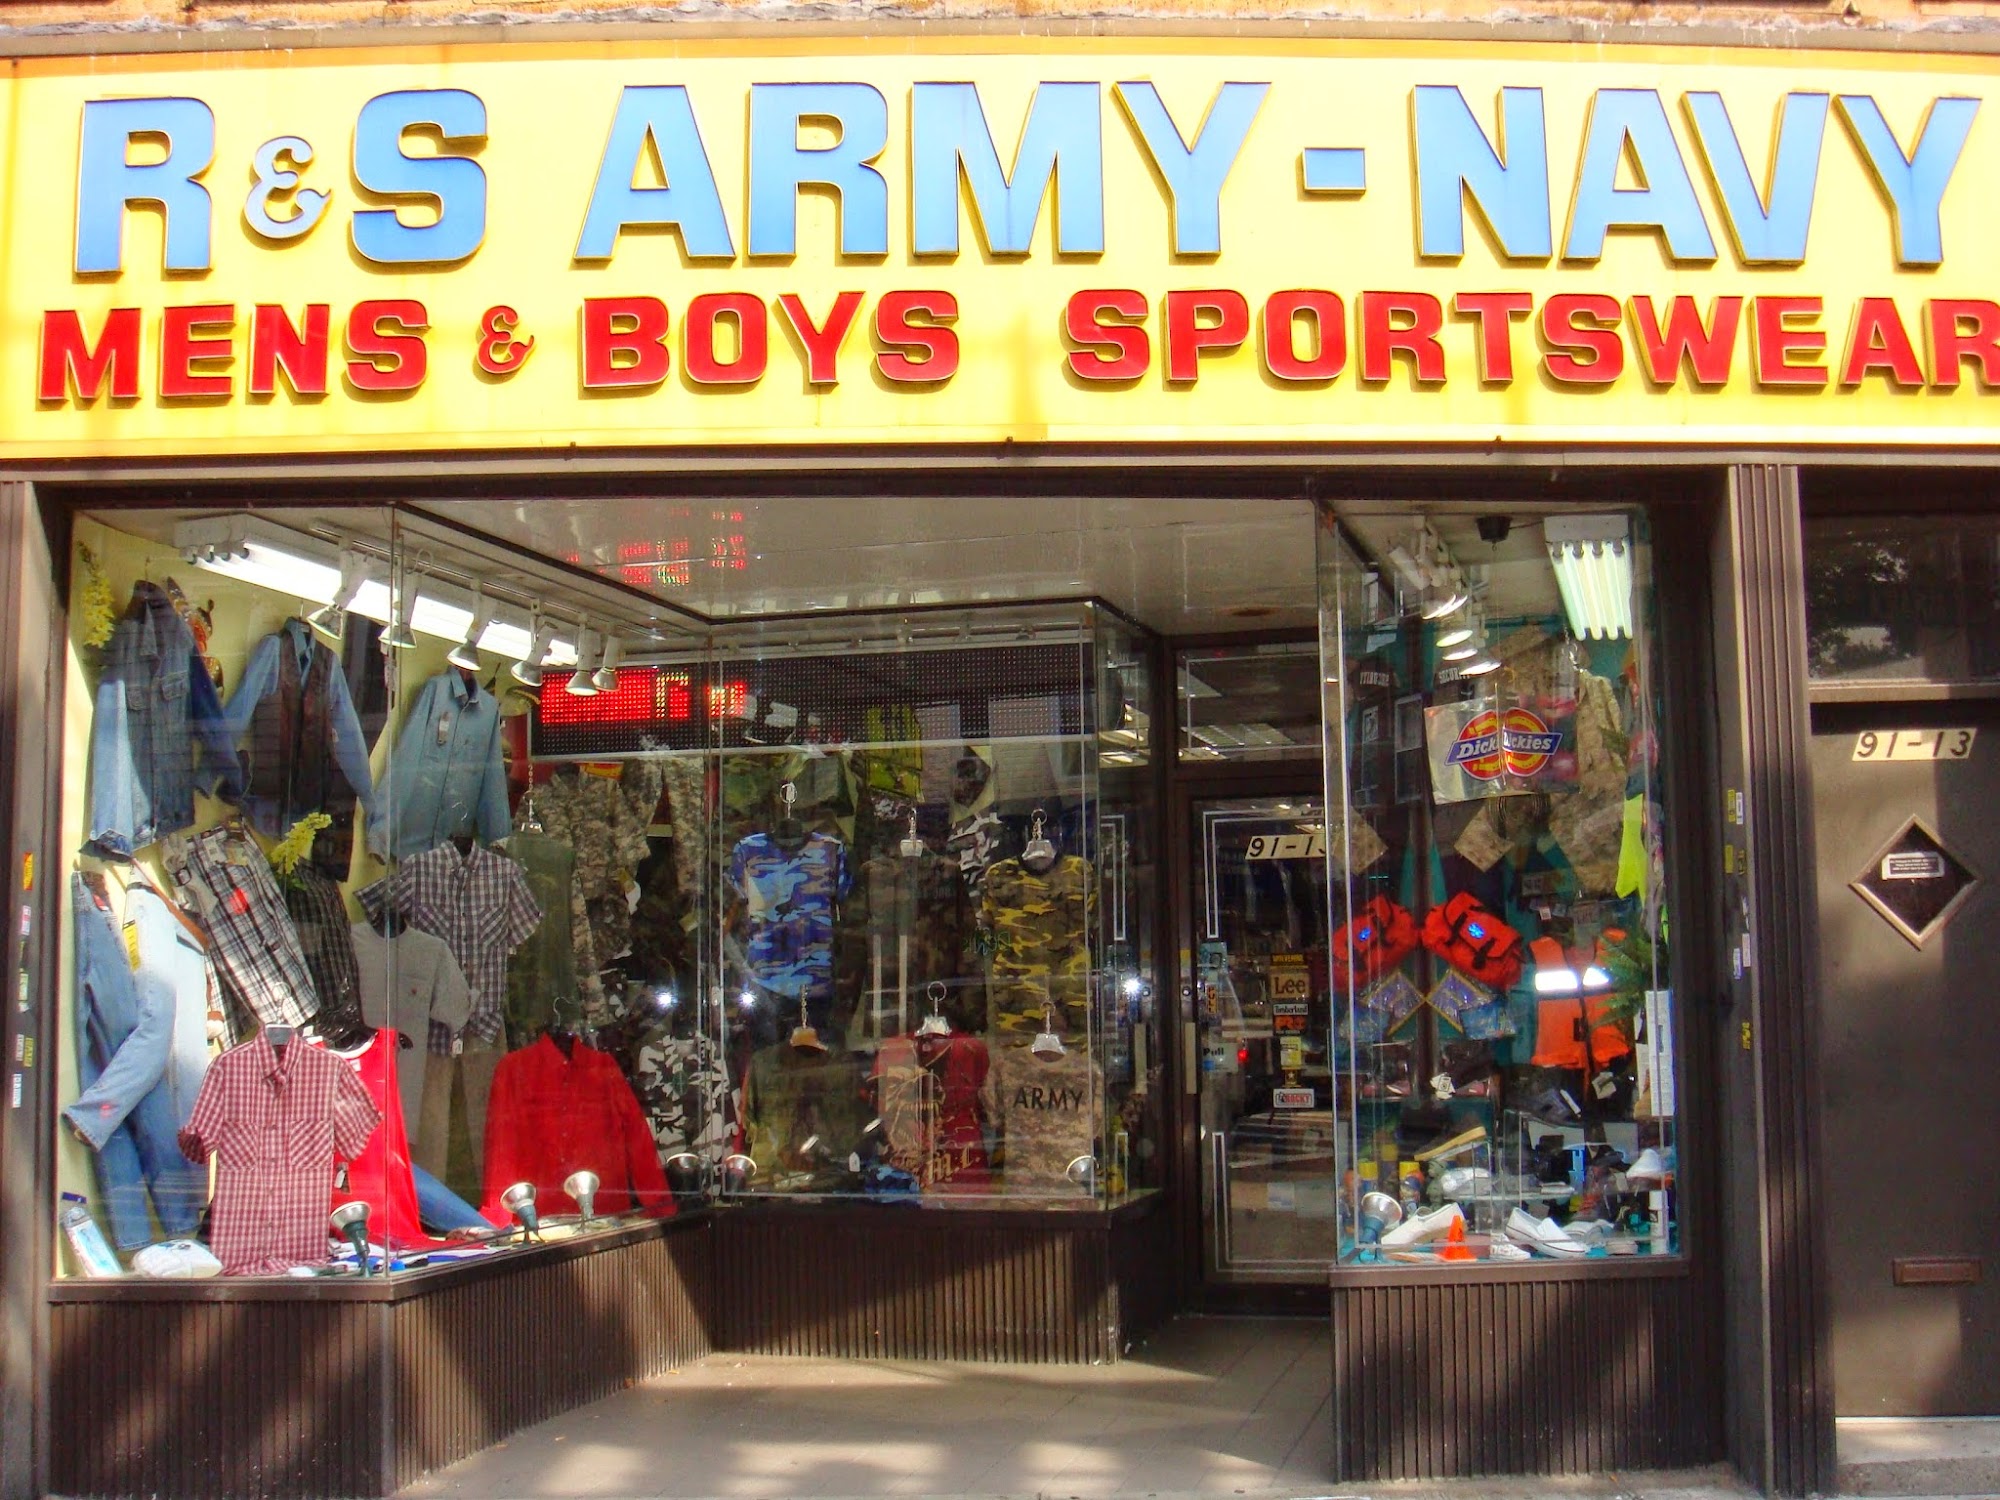 Army Navy USA